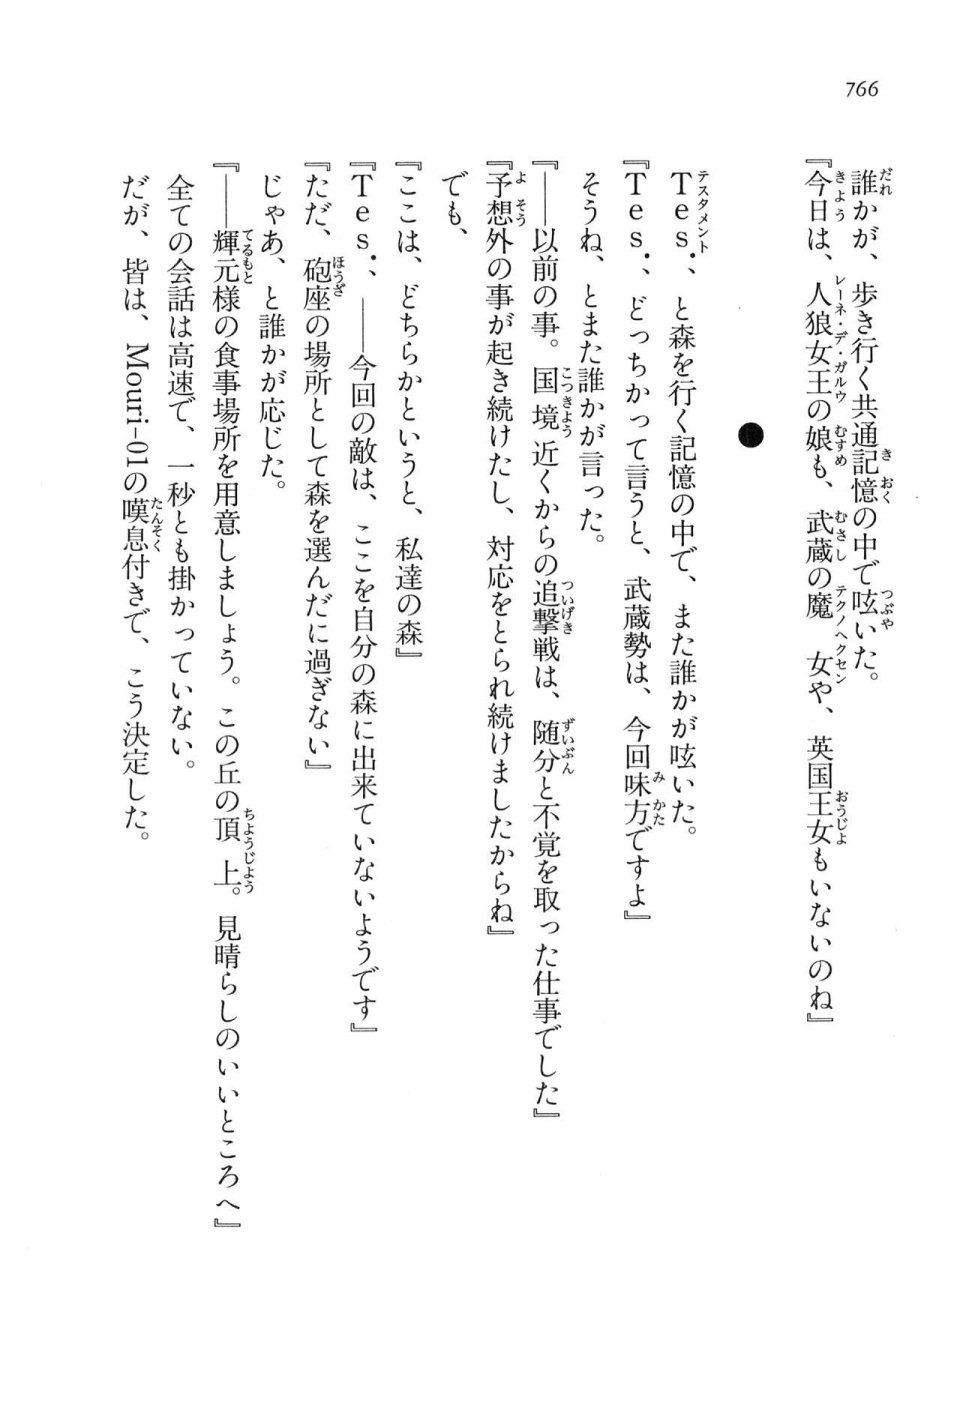 Kyoukai Senjou no Horizon LN Vol 16(7A) - Photo #766